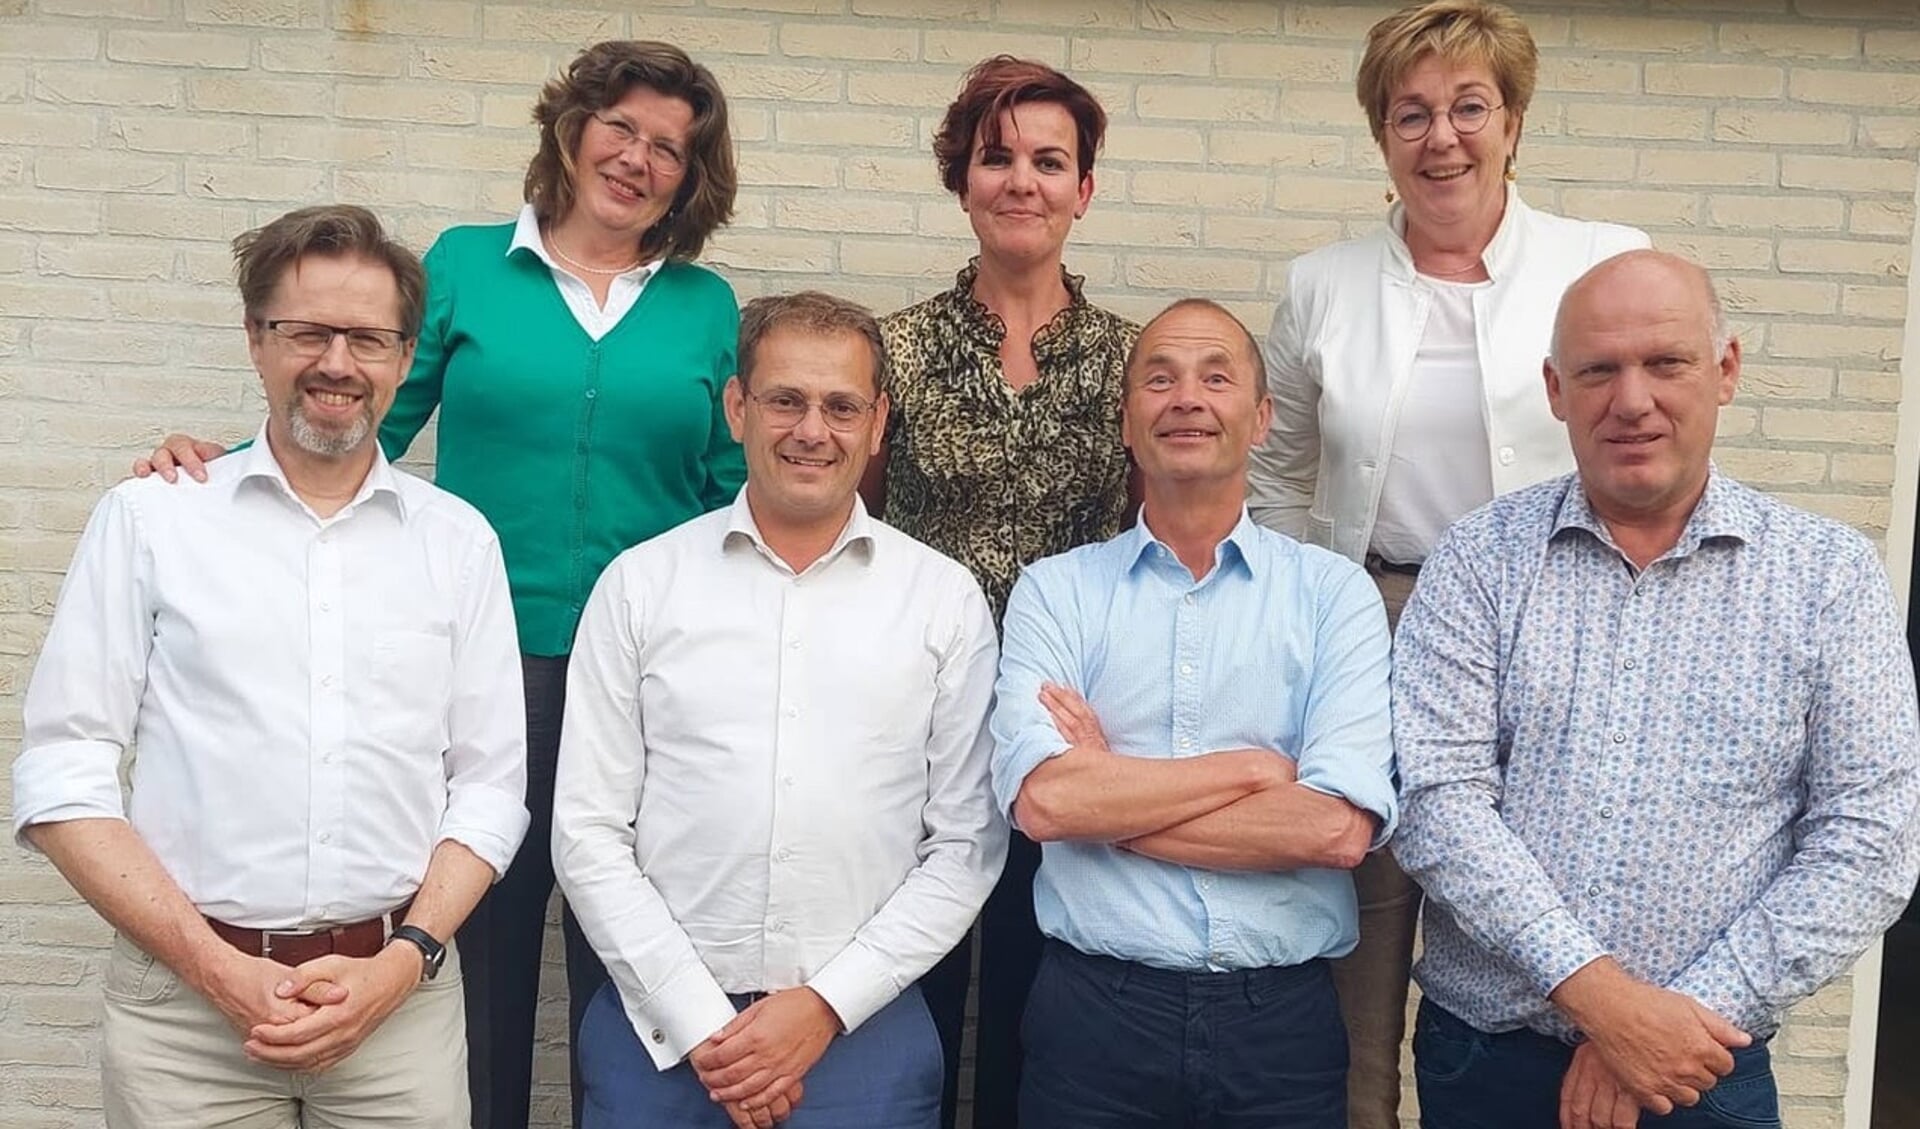 Wethouder Gelbrig Hoekstra (rechtsboven) en de huidige CDA-fractie van Tytsjerksteradiel. Wie weet volgt één van de raadsleden haar dit jaar op? Dat zal mede afhangen van de uitslag van de raadsverkiezing van 16 maart 2022.